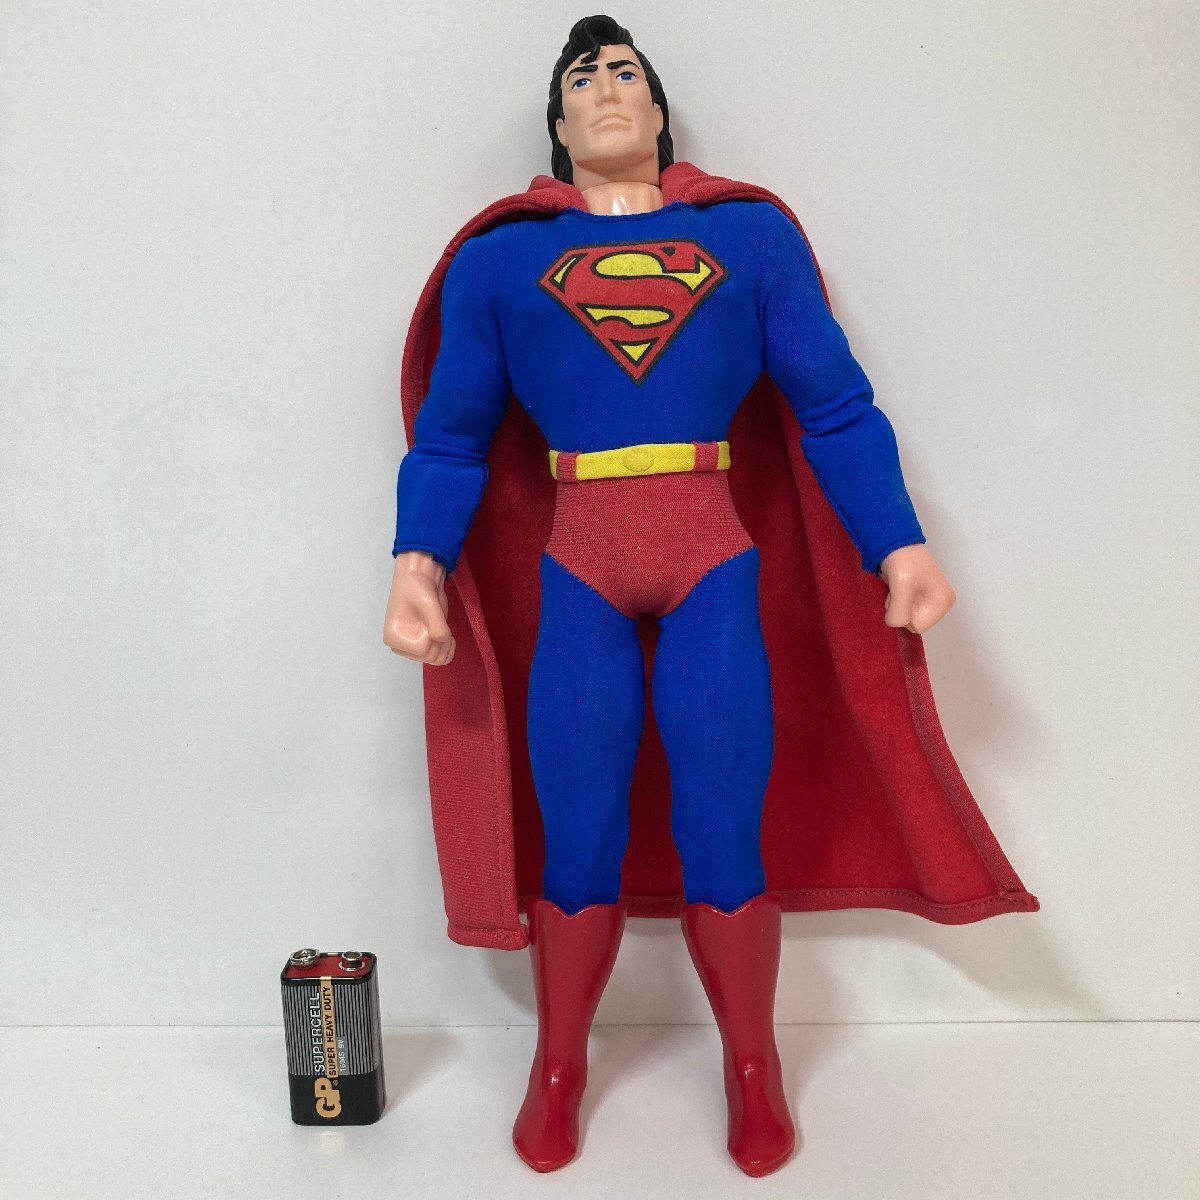 【フィギュア】 ケナー社 スーパーマン SUPERMAN MAN OF STEEL 1996 Kenner ★の画像3